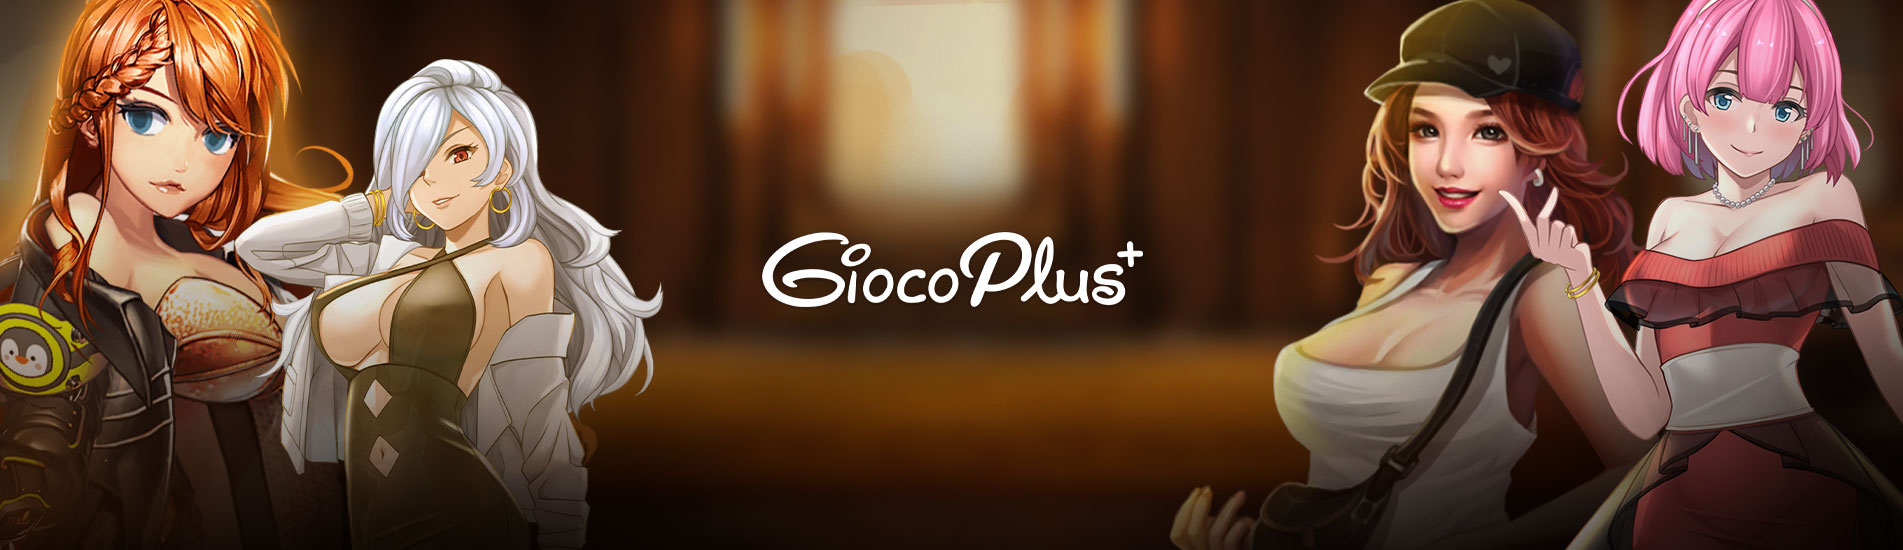 Gioco Plus banner